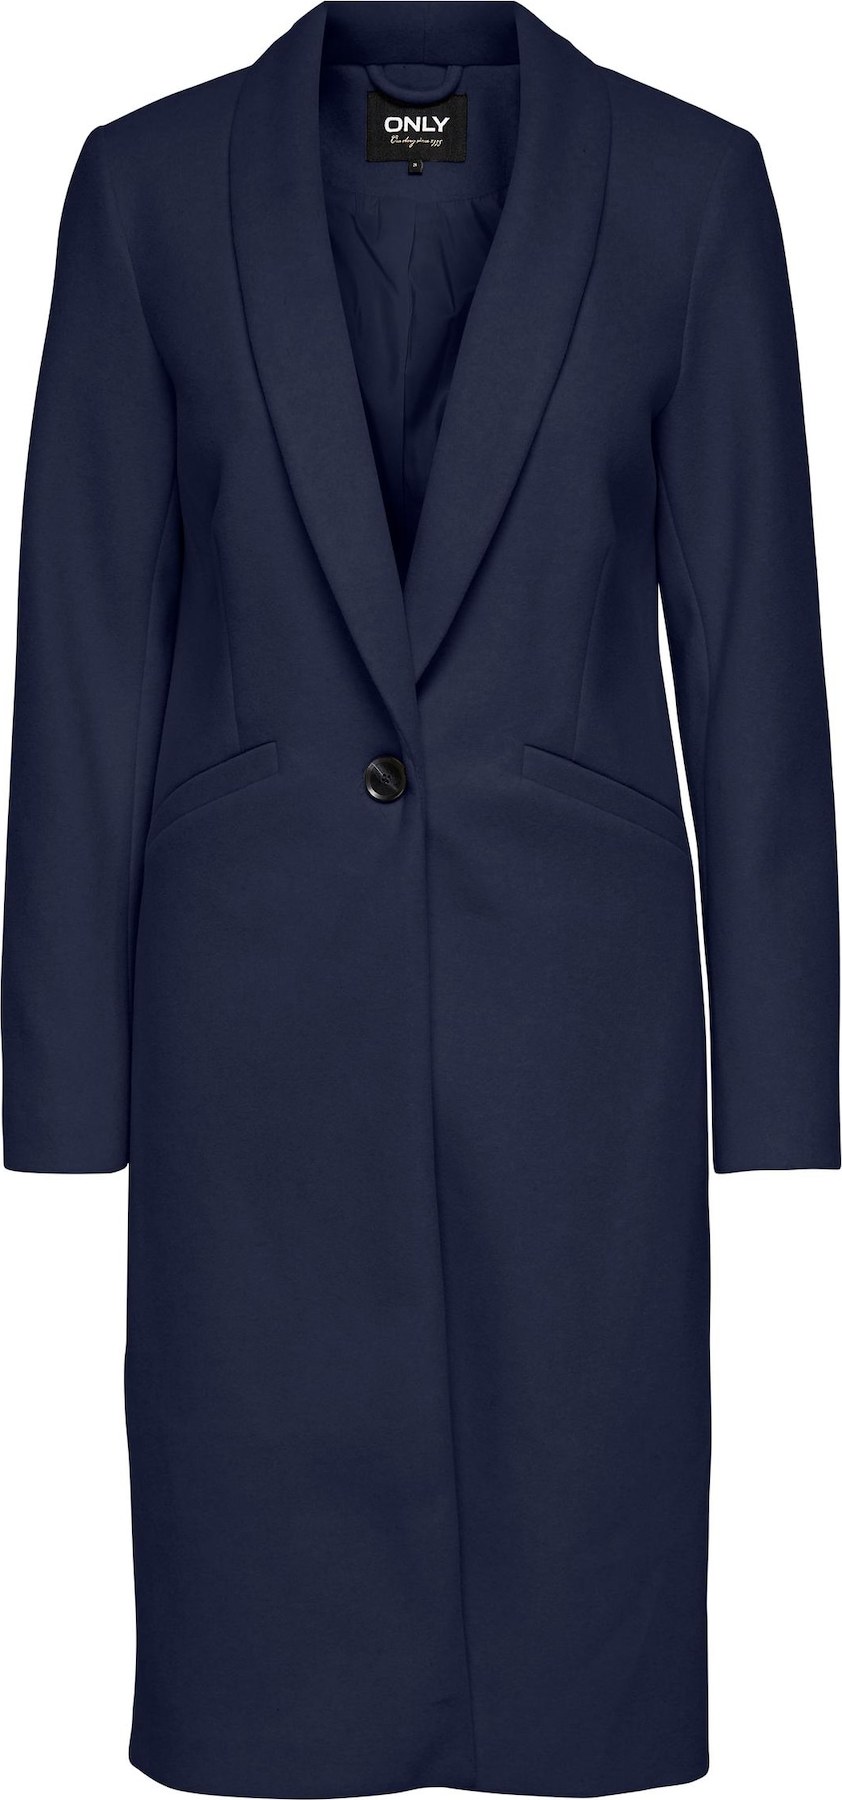 ONLY Přechodný kabát 'Emma' marine modrá